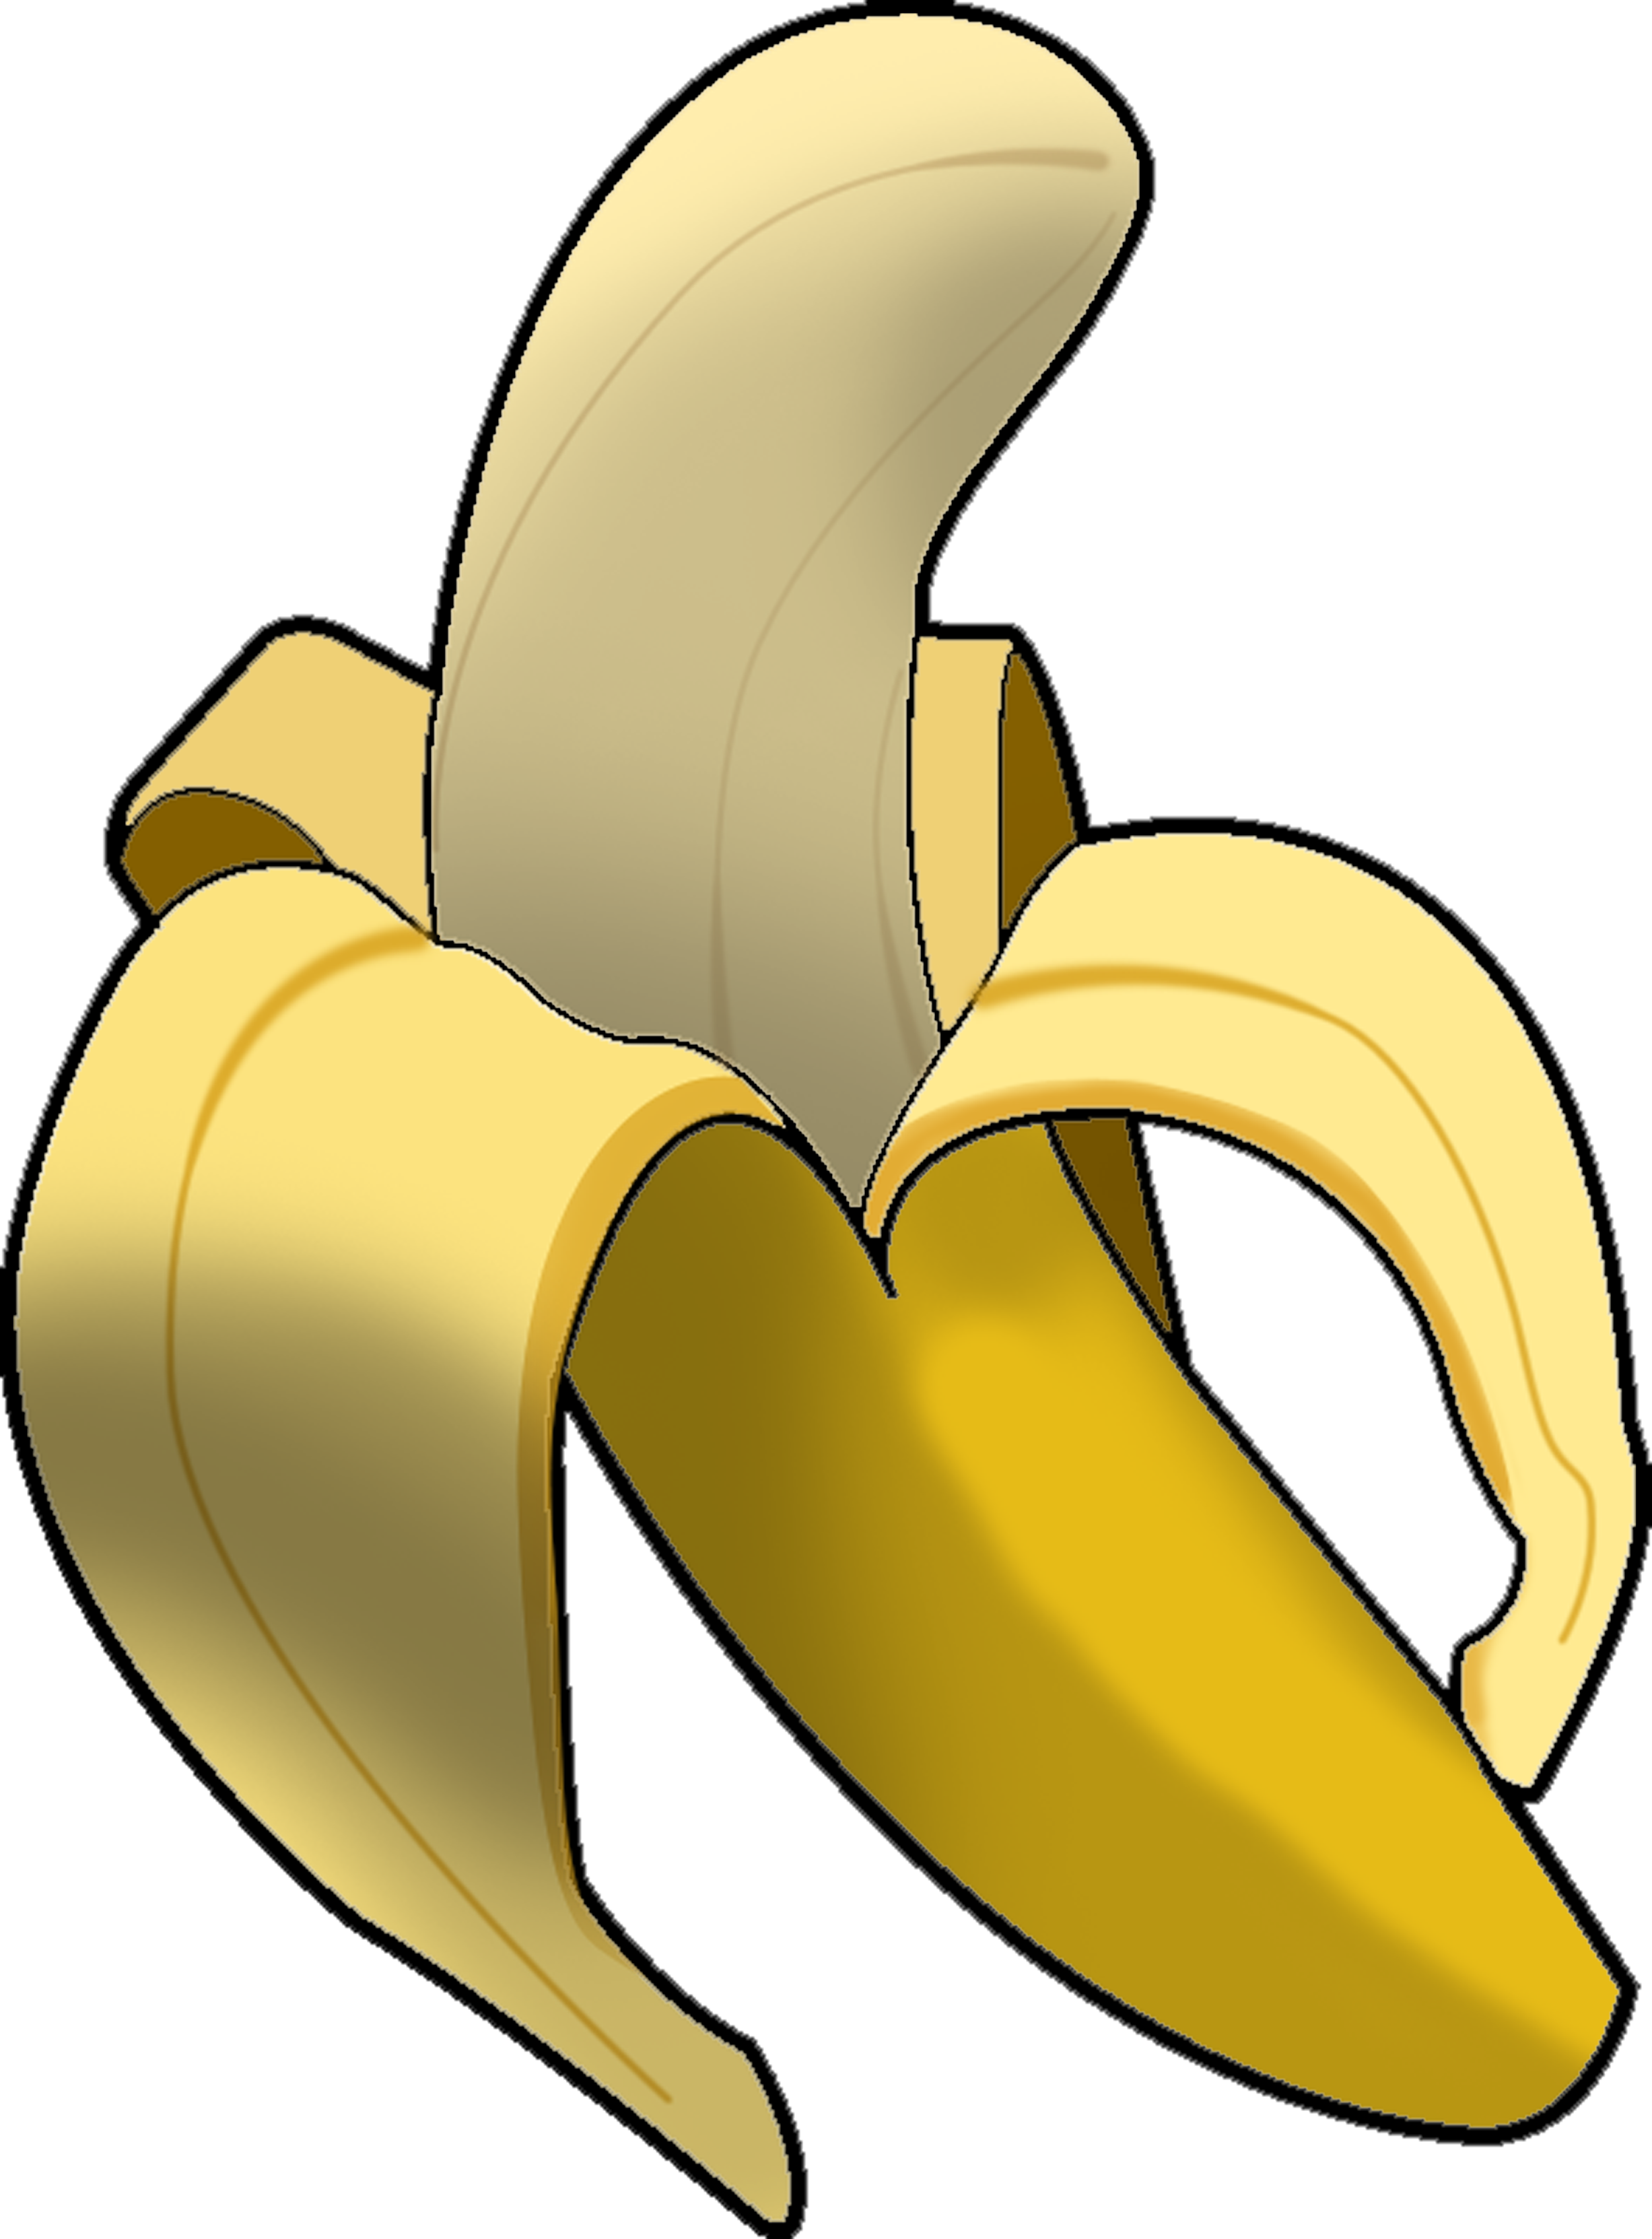 Cartoon Bananas - ClipArt Best